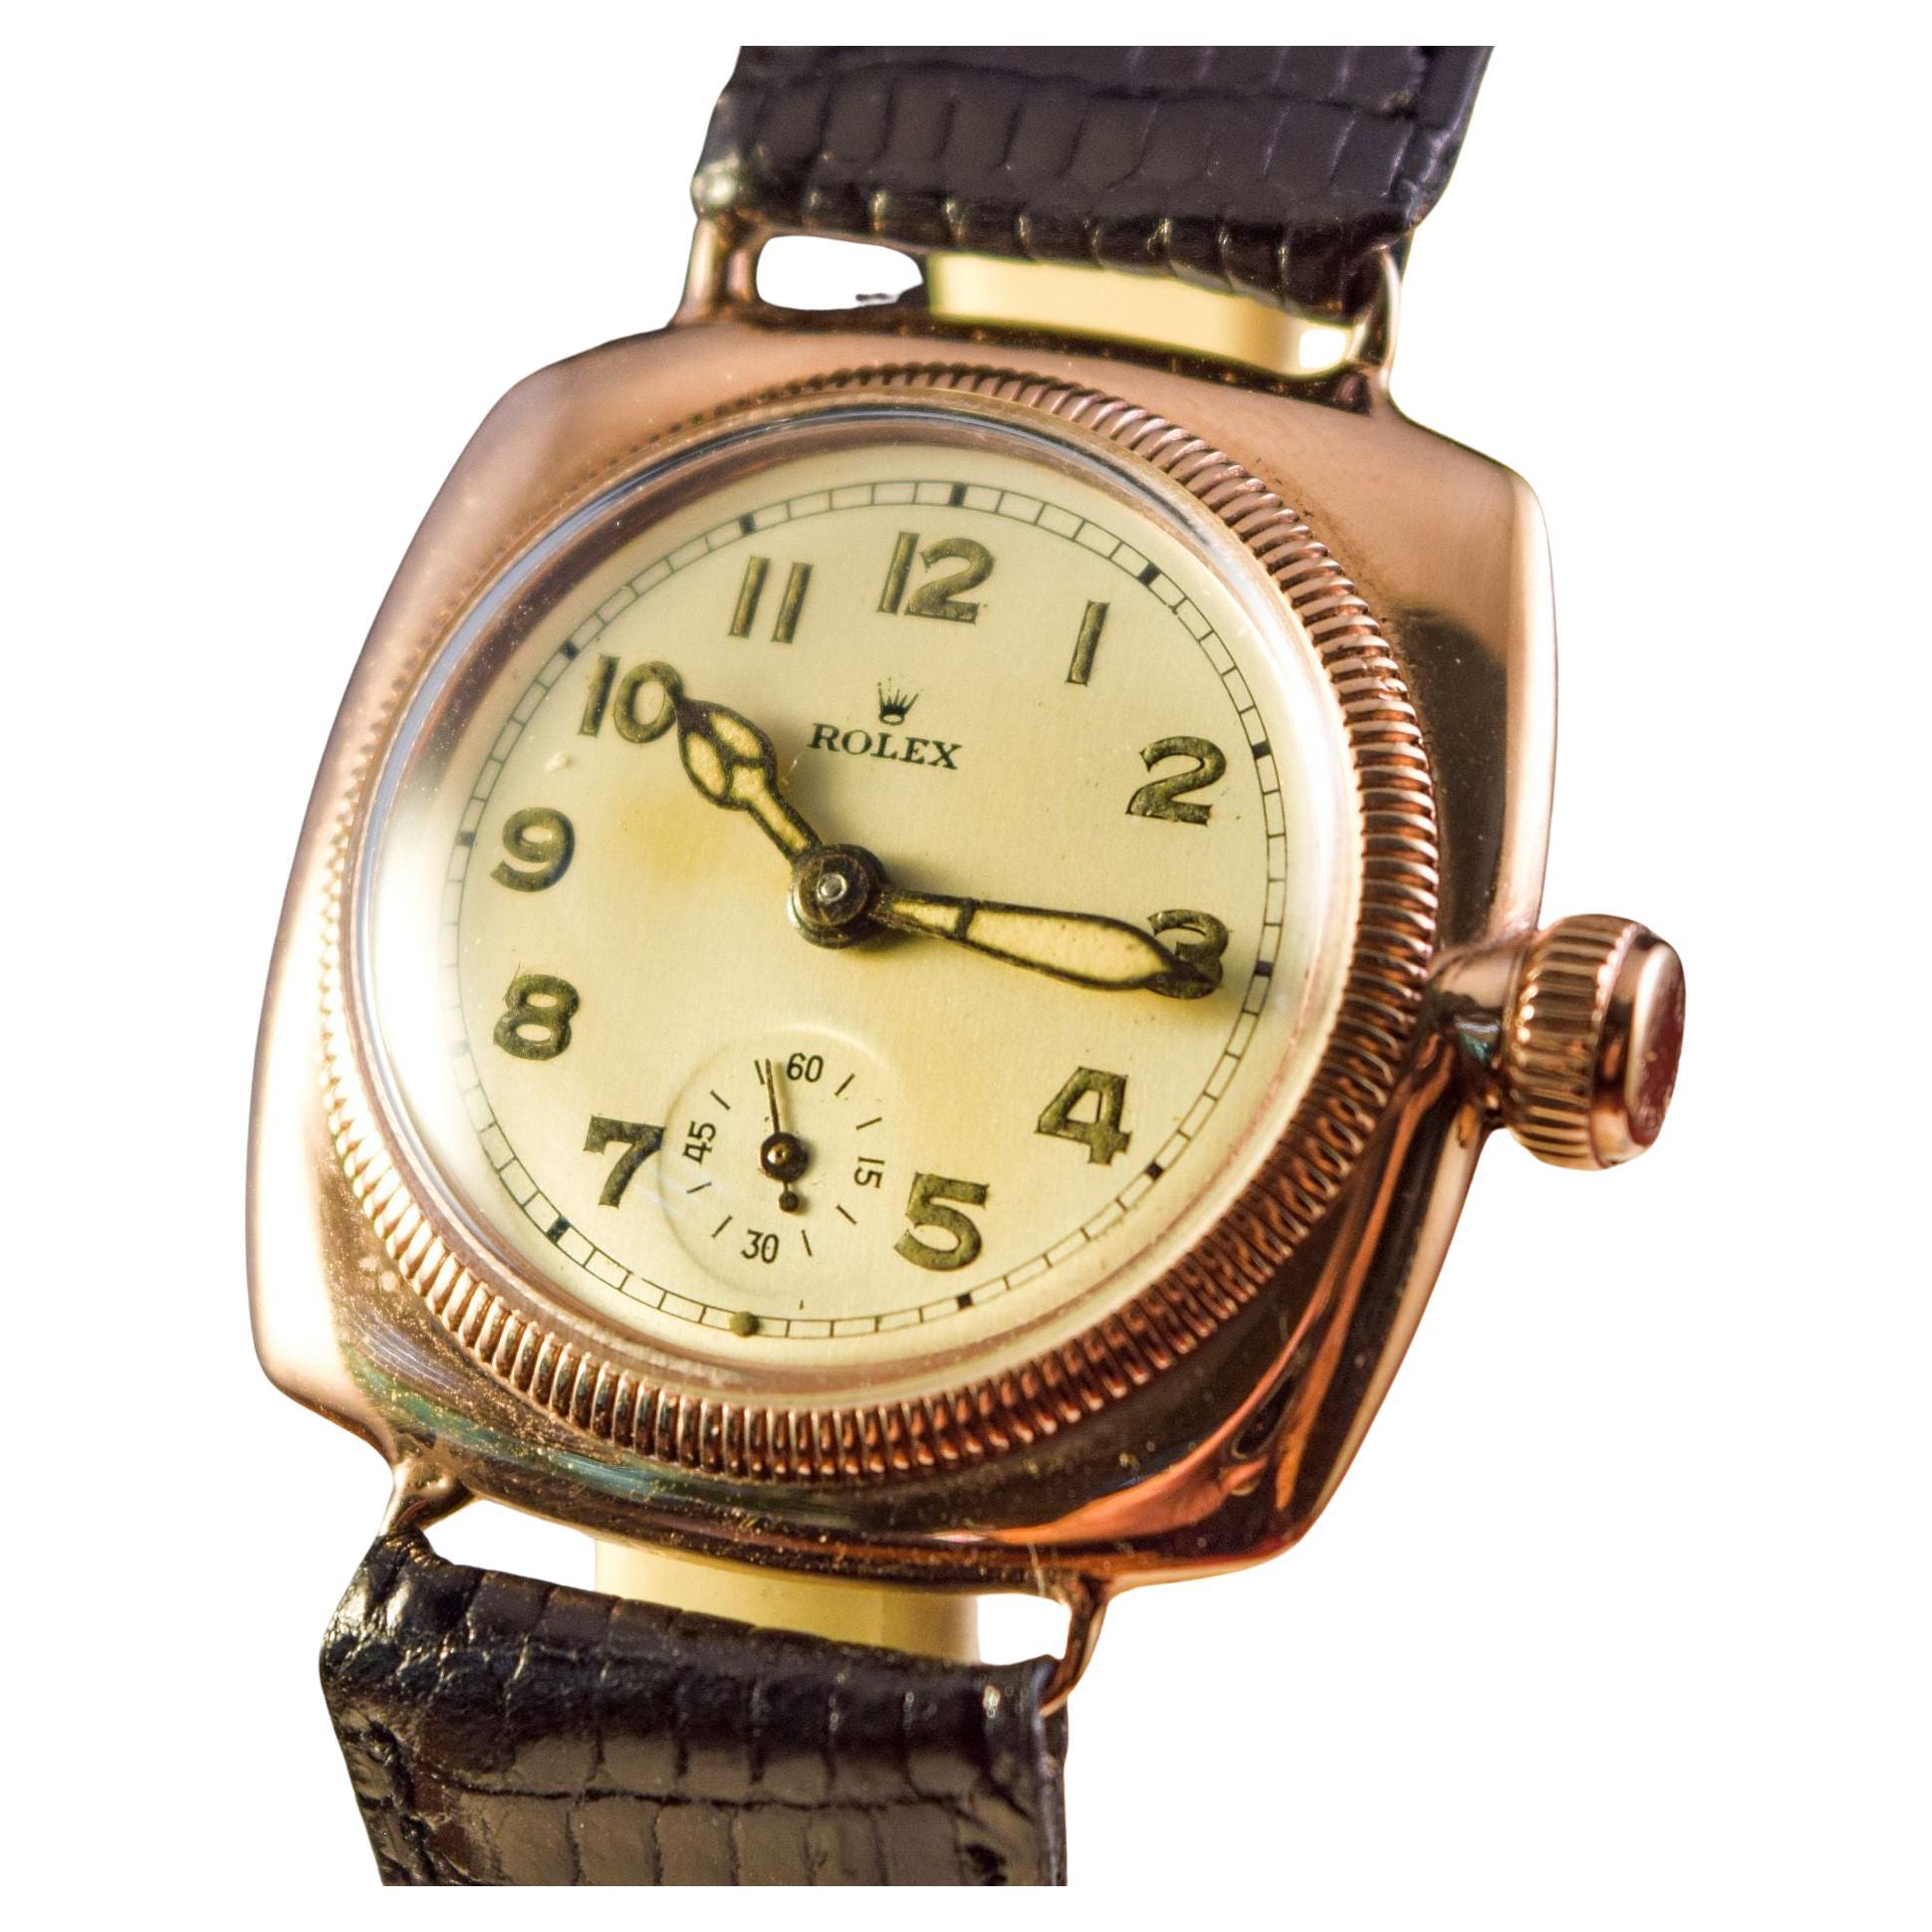 Rolex Early Rolex Oyster solid pink gold Cushion case.
Cette montre est dans un état exceptionnel pour son âge.
Années 1920 La première montre étanche au monde.
Il s'agit de la plus grande taille produite par Rolex à l'époque.
32 MM sans le